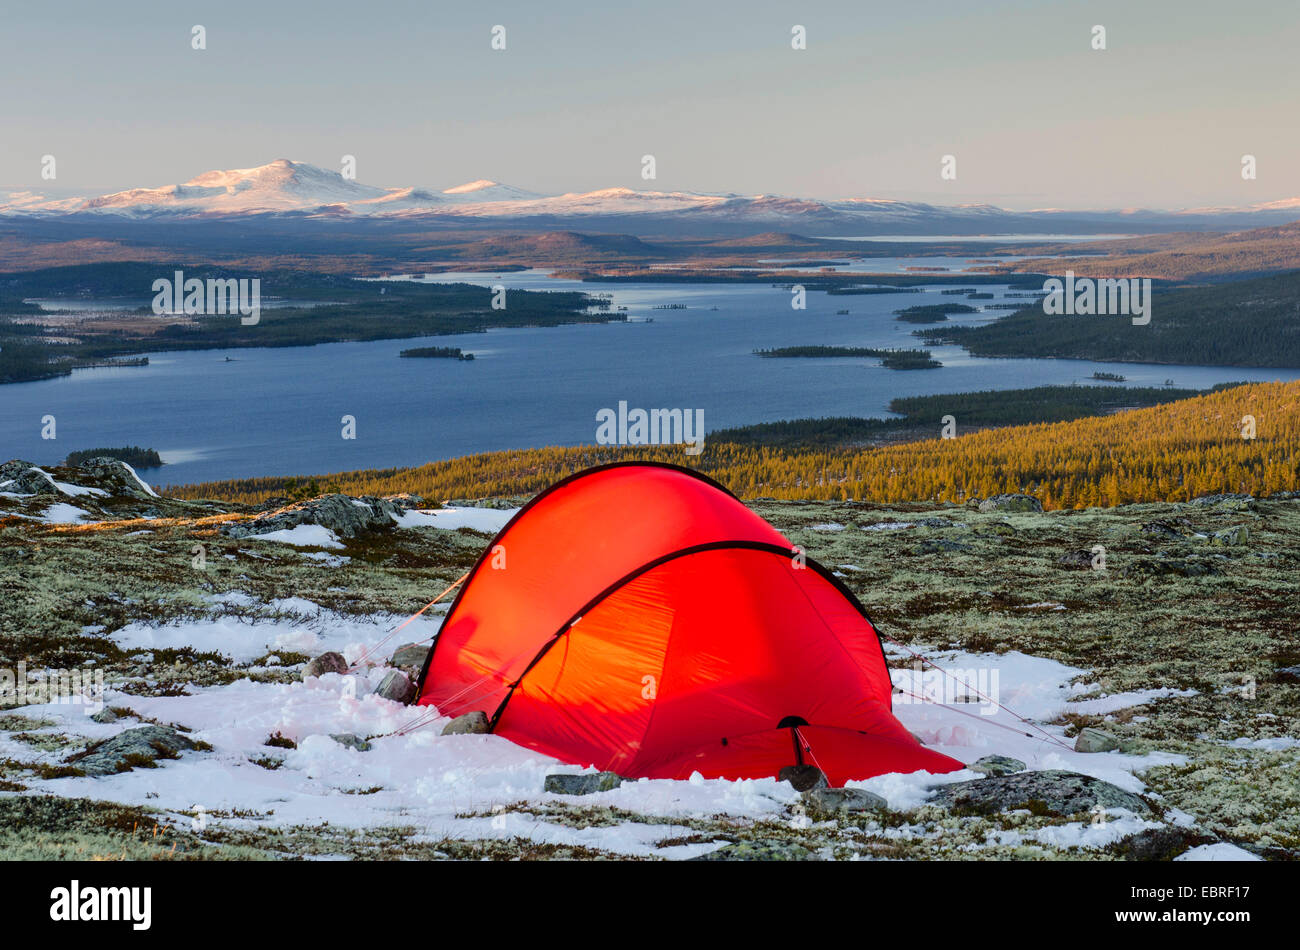 Tenda panoramica immagini e fotografie stock ad alta risoluzione - Alamy